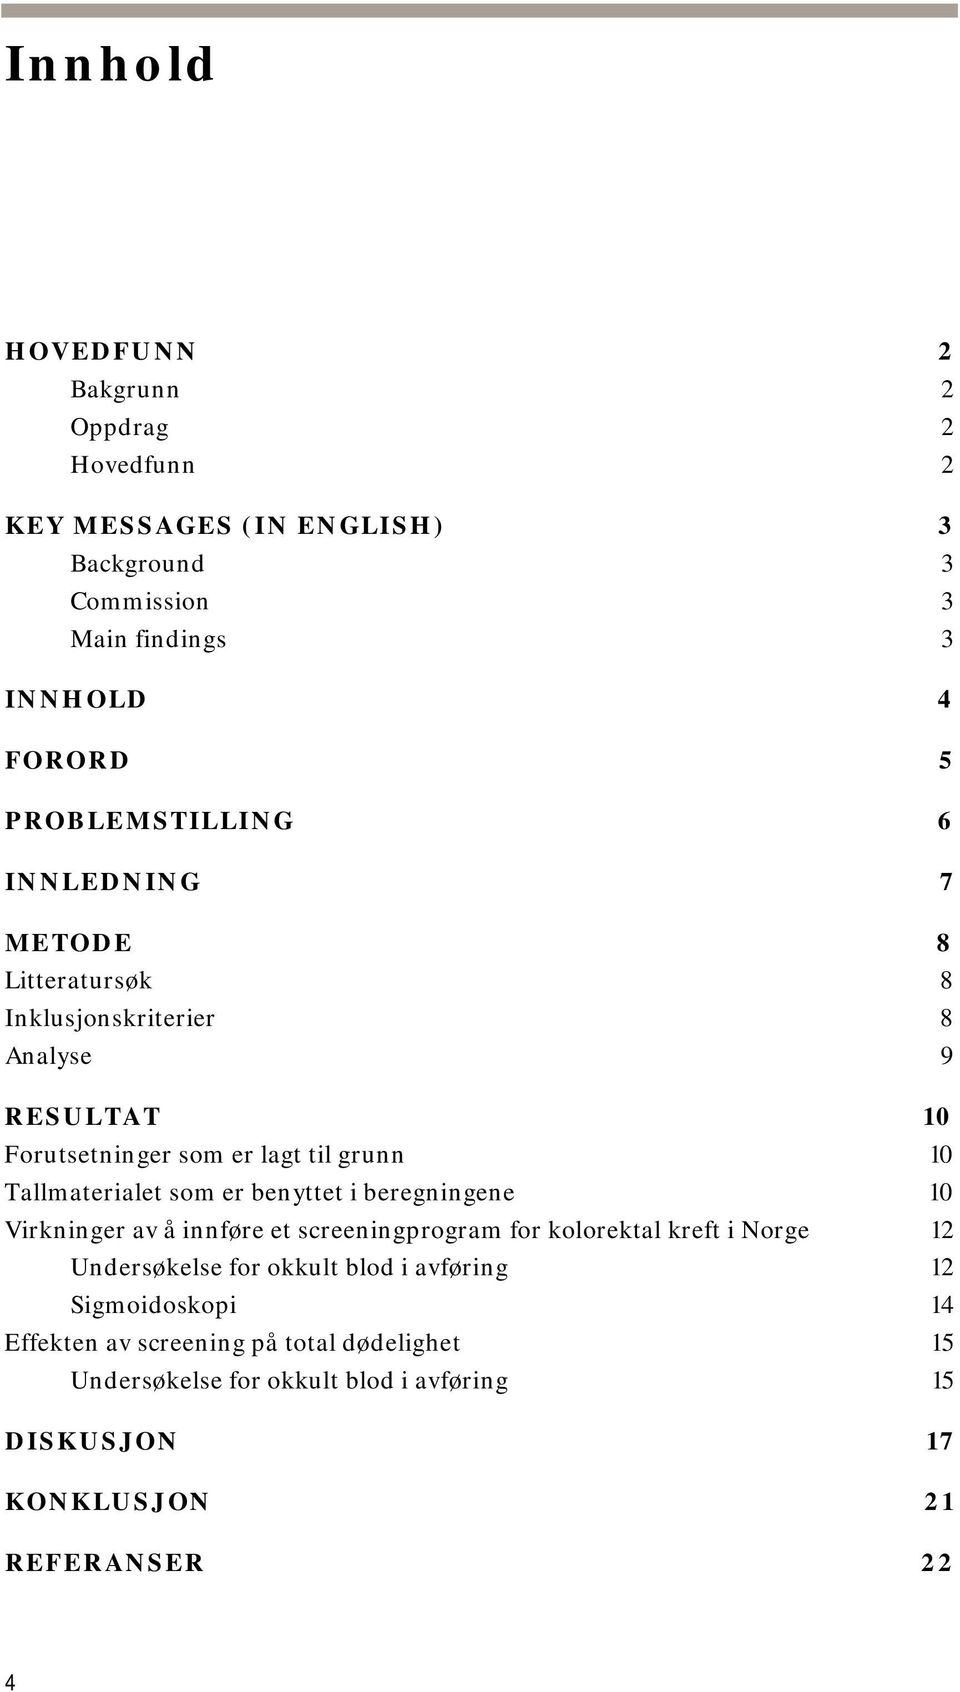 Tallmaterialet som er benyttet i beregningene 10 Virkninger av å innføre et screeningprogram for kolorektal kreft i Norge 12 Undersøkelse for okkult